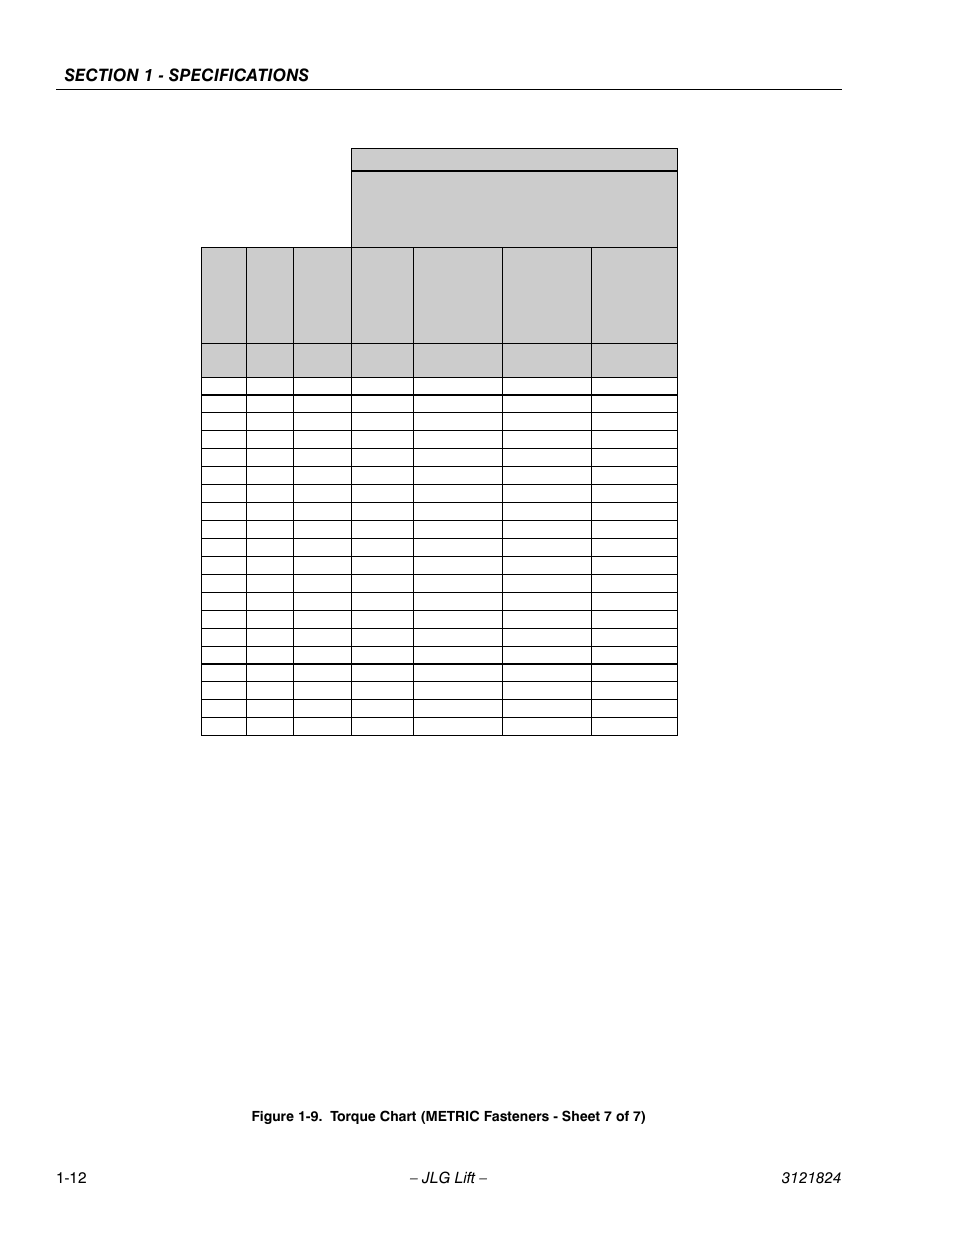 Metric Allen Bolt Torque Chart